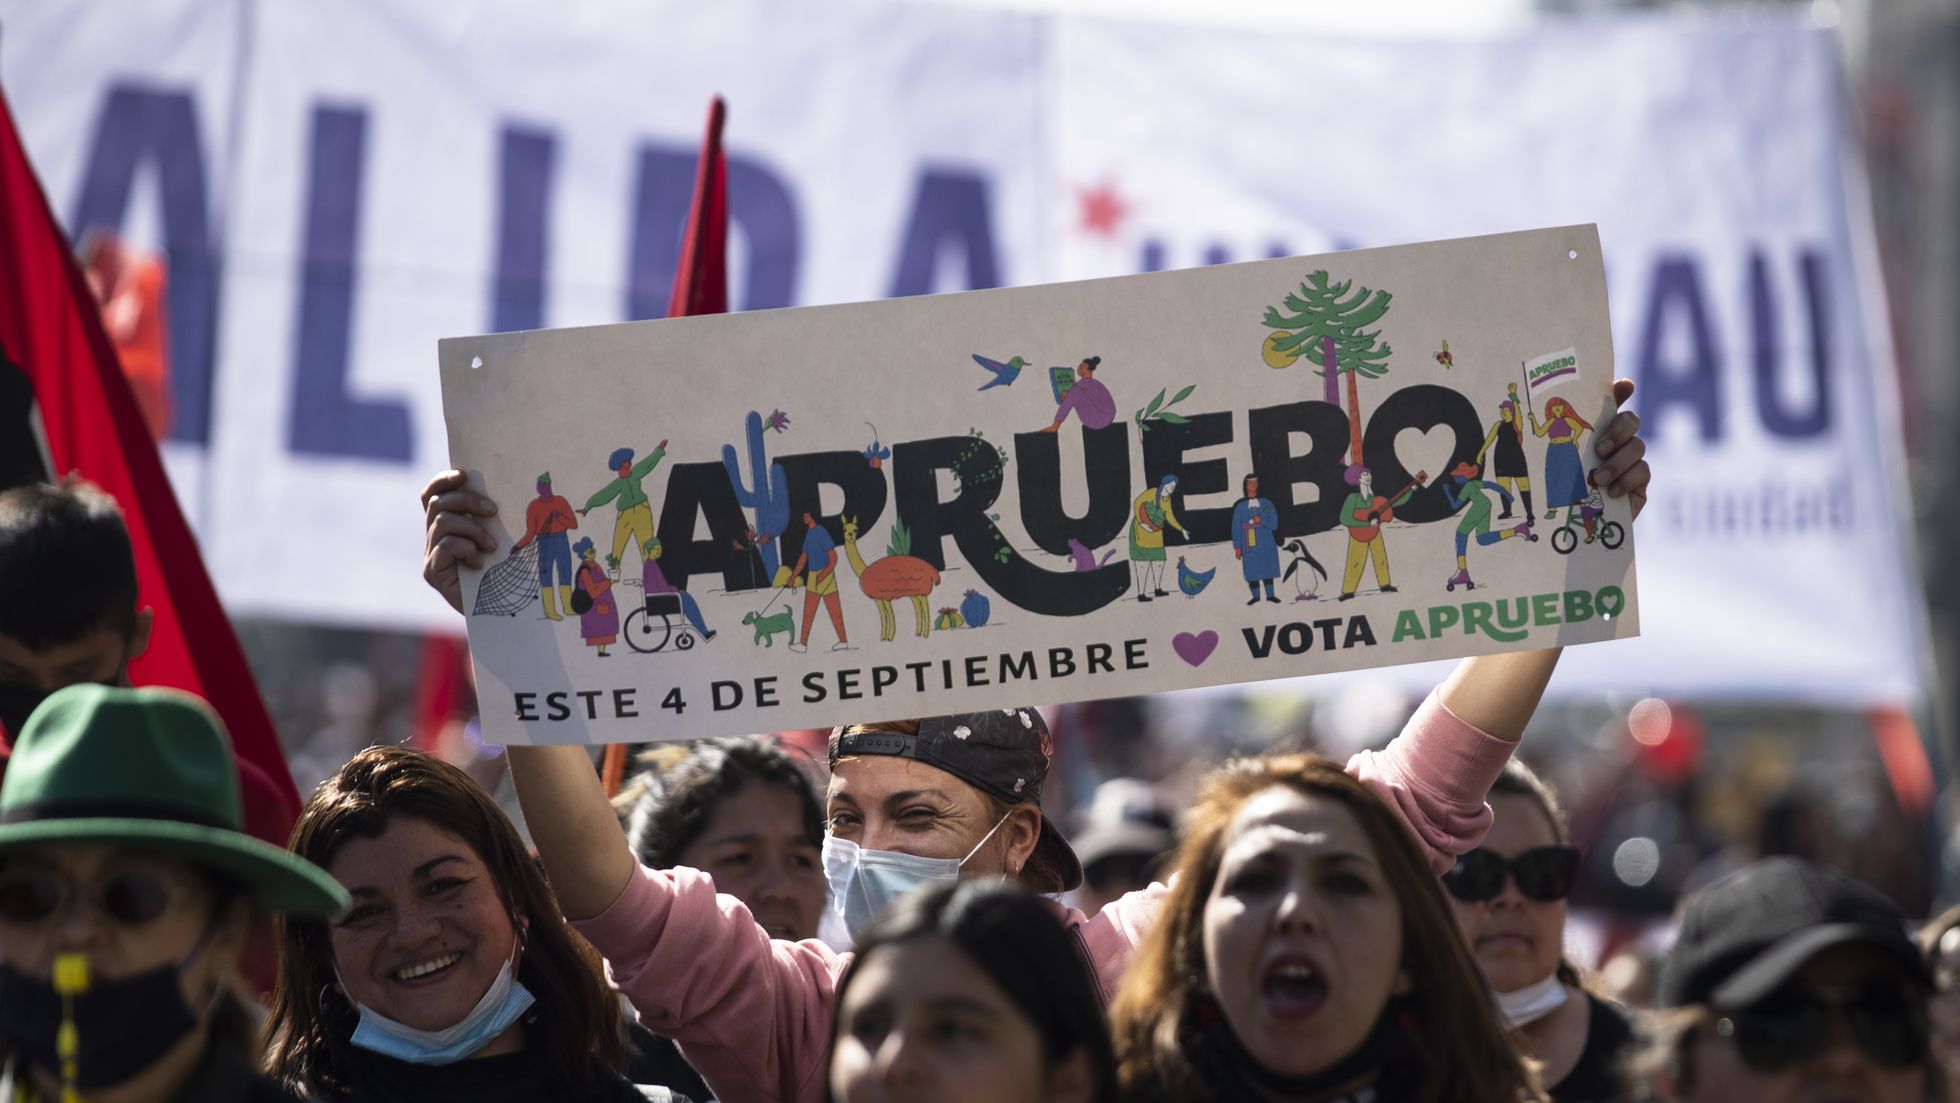 Cile, domenica si vota per la nuova Costituzione: una web serie racconta le ragioni del "apruebo"